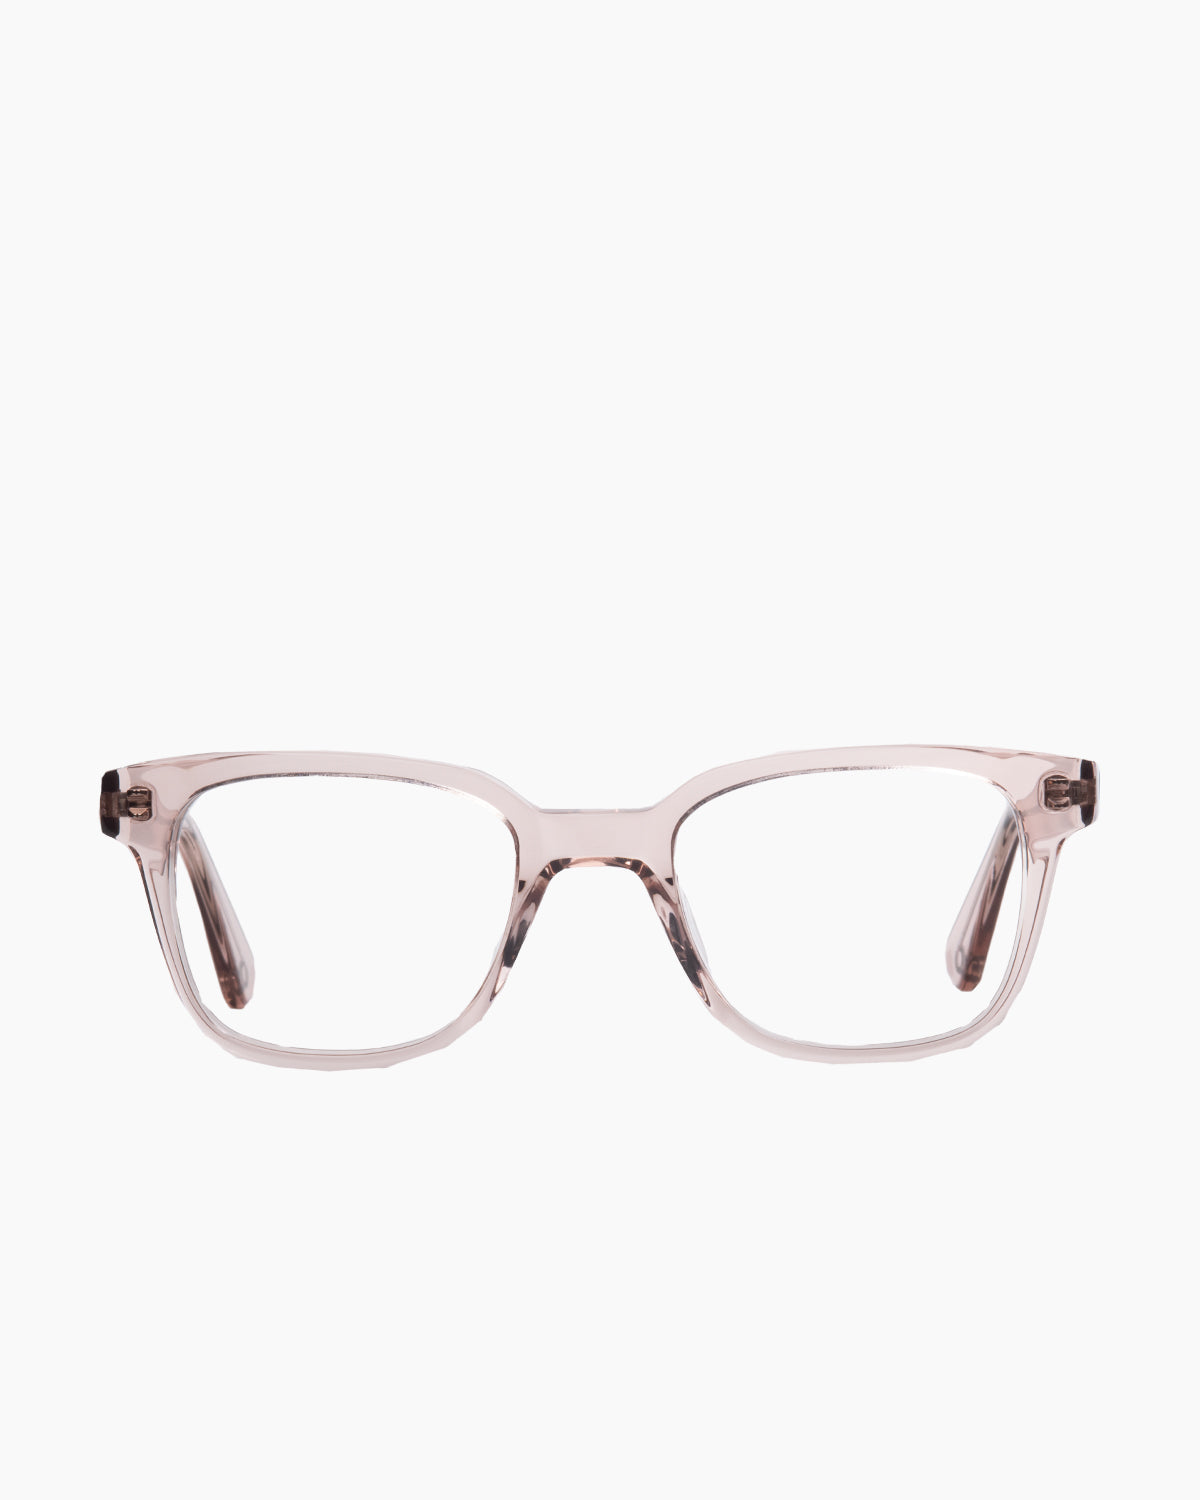 Evolve - Harper - 254 | Bar à lunettes:  Marie-Sophie Dion